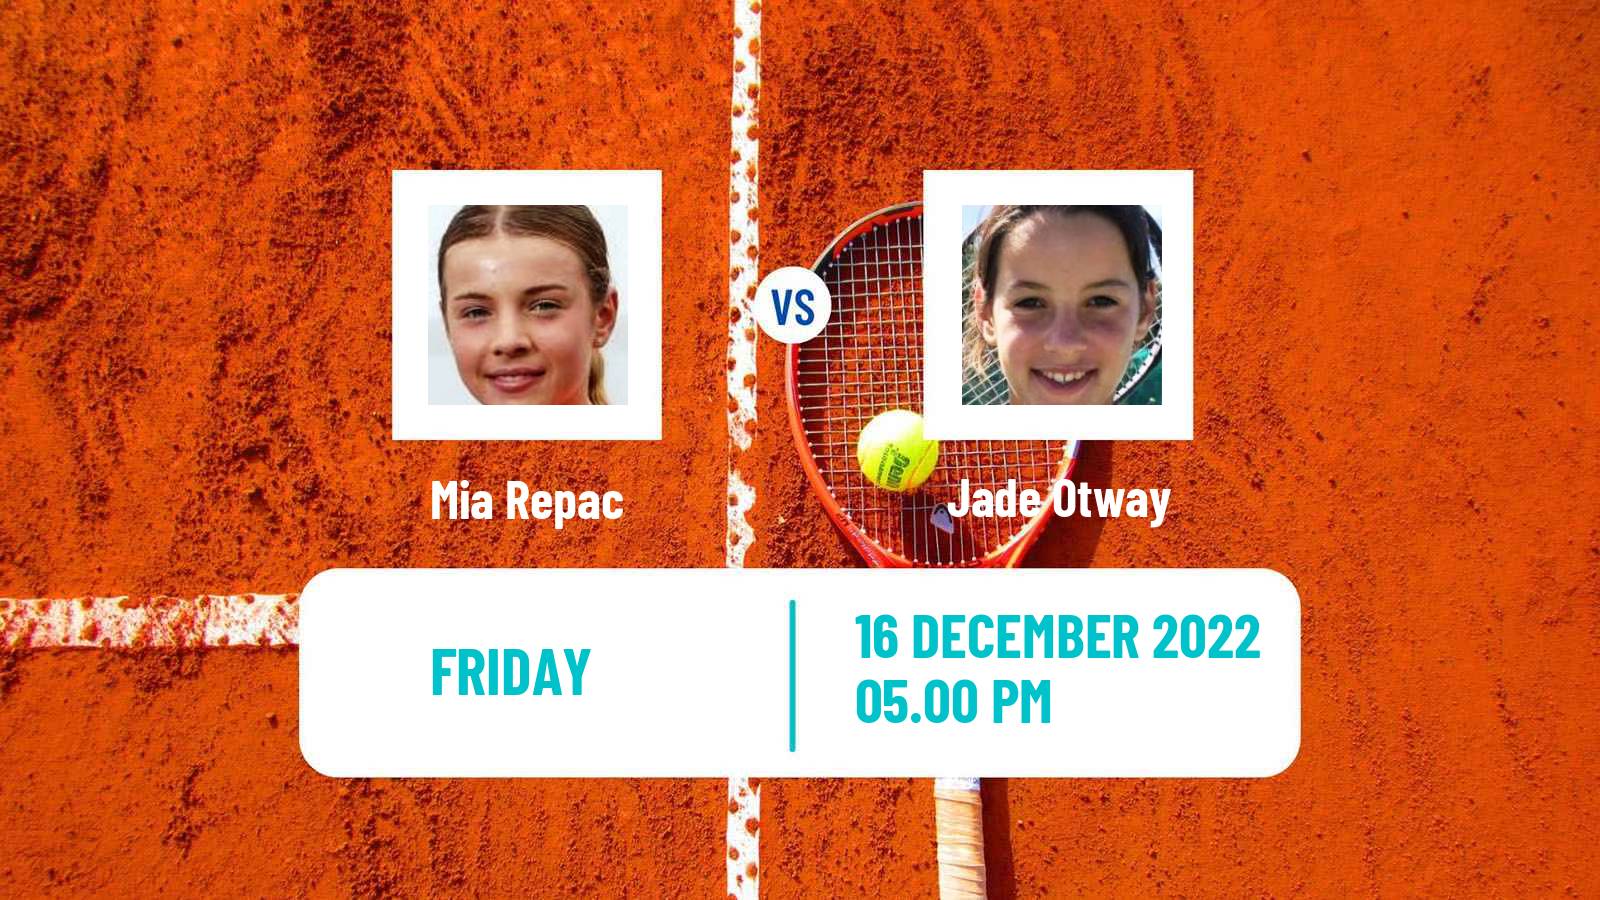 Tennis ITF Tournaments Mia Repac - Jade Otway